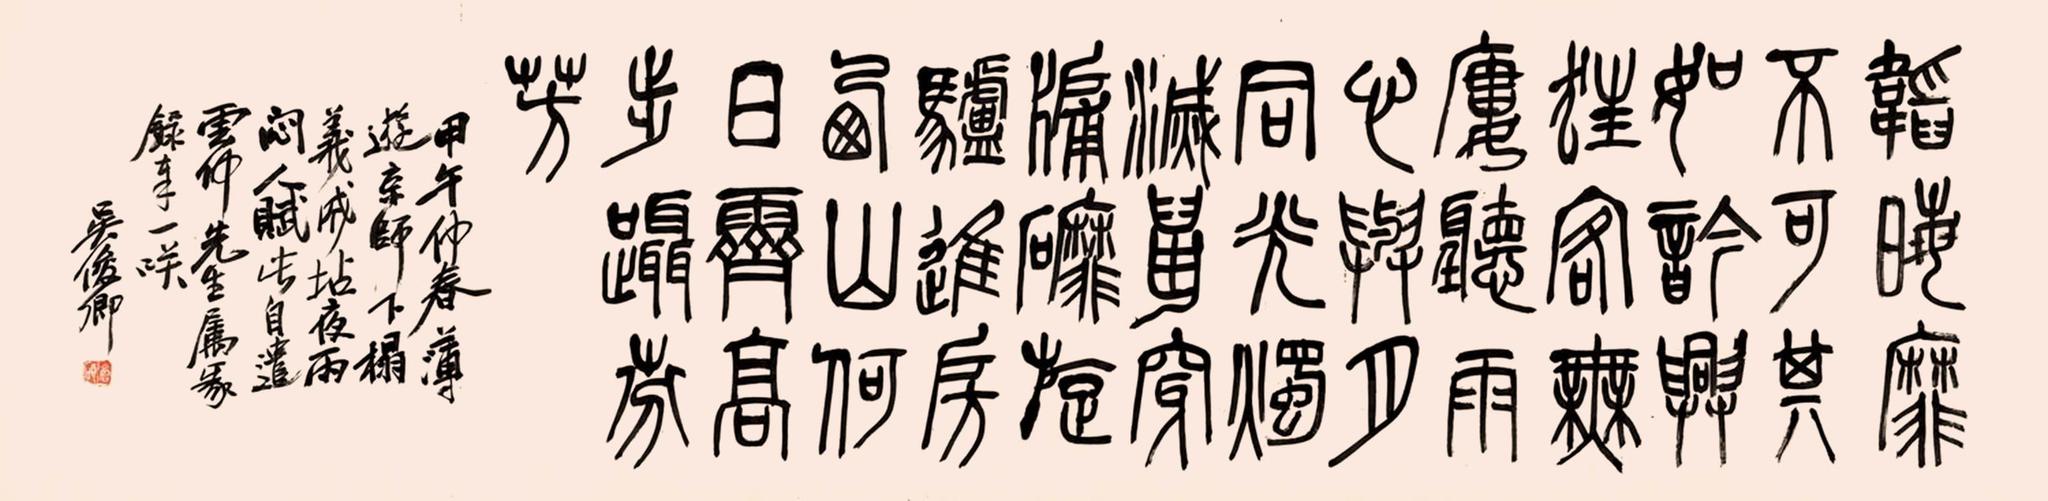 吴昌硕1894年篆书五言诗纸本横披